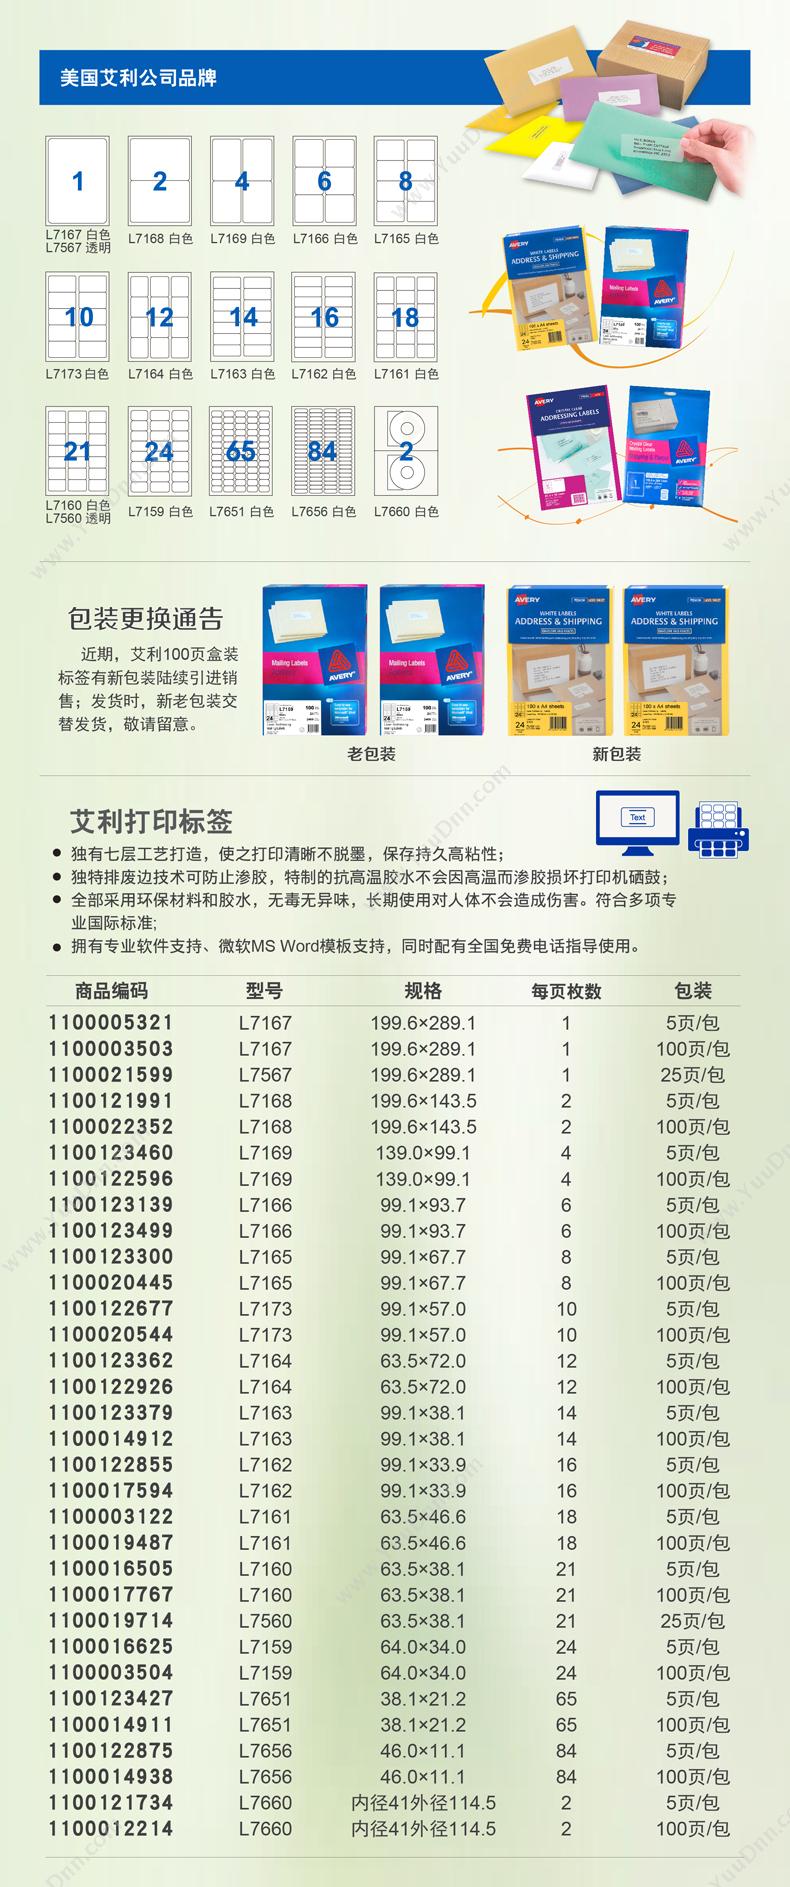 立信 Lixin 273-50K 存货吊卡 50K 凭证封面